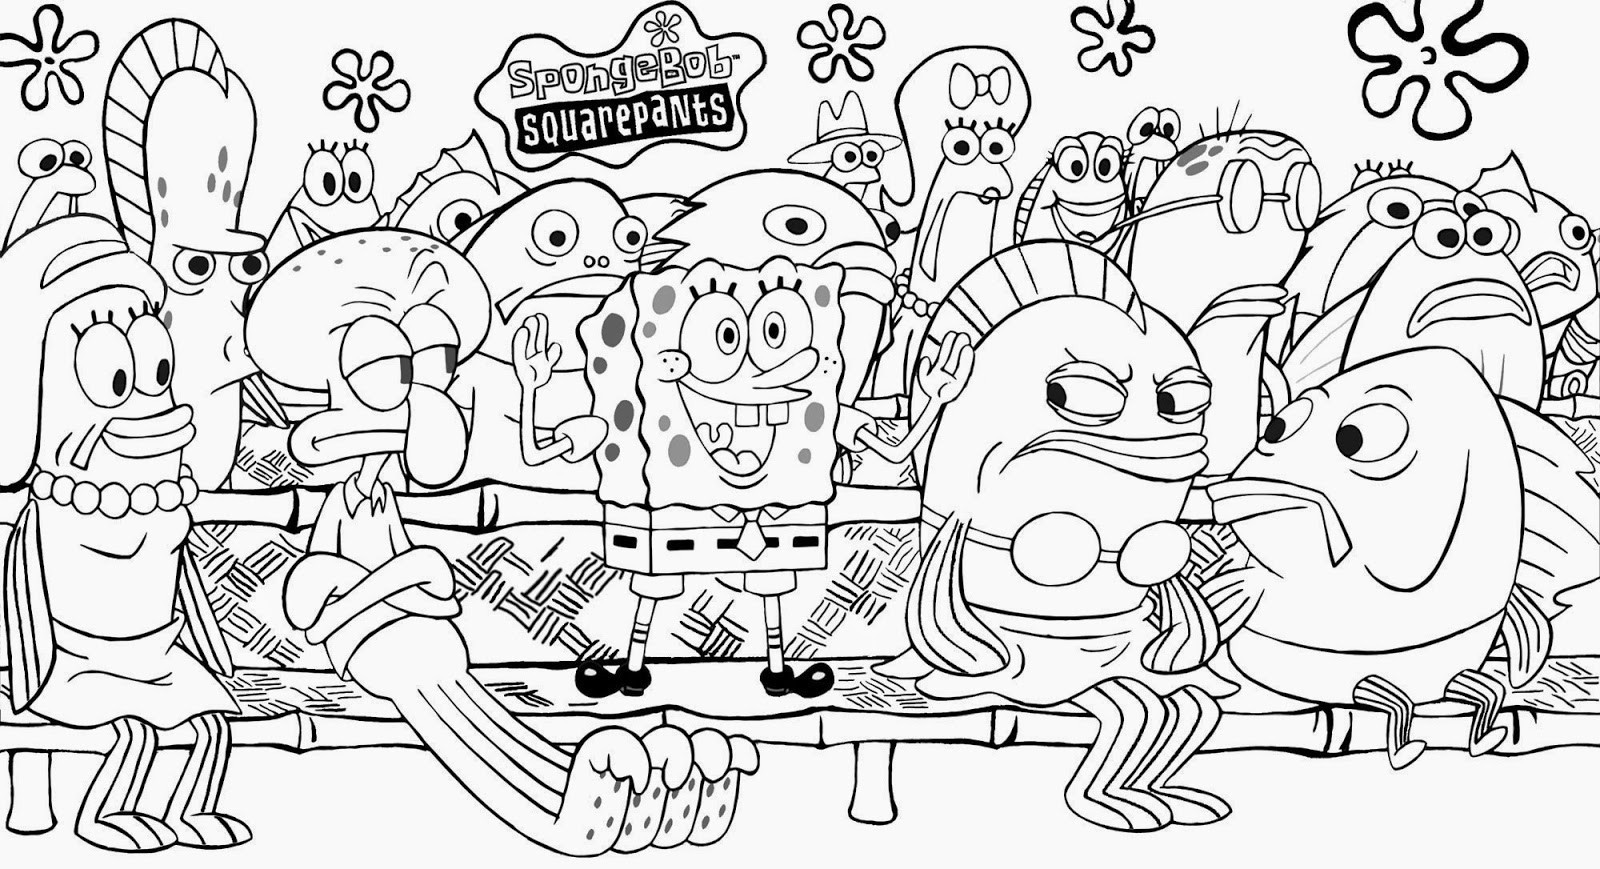 Spongebob Squarepants Coloring Pages Pdf